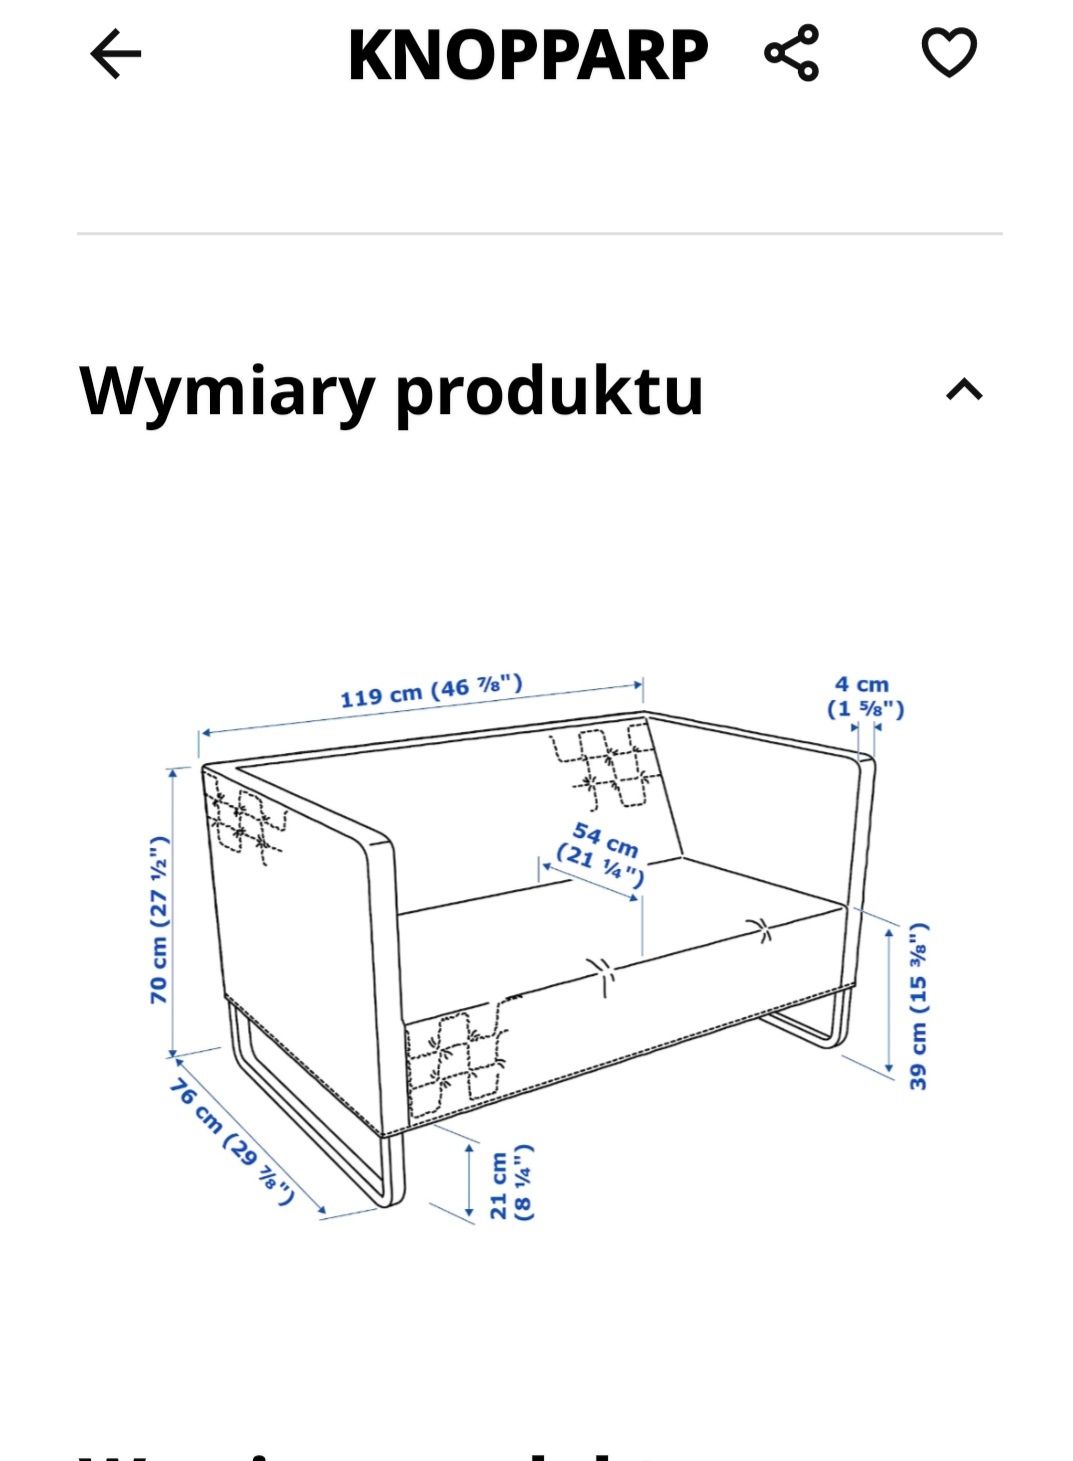 sprzedam sofę KNOPPARP  IKEA 2 osobowa